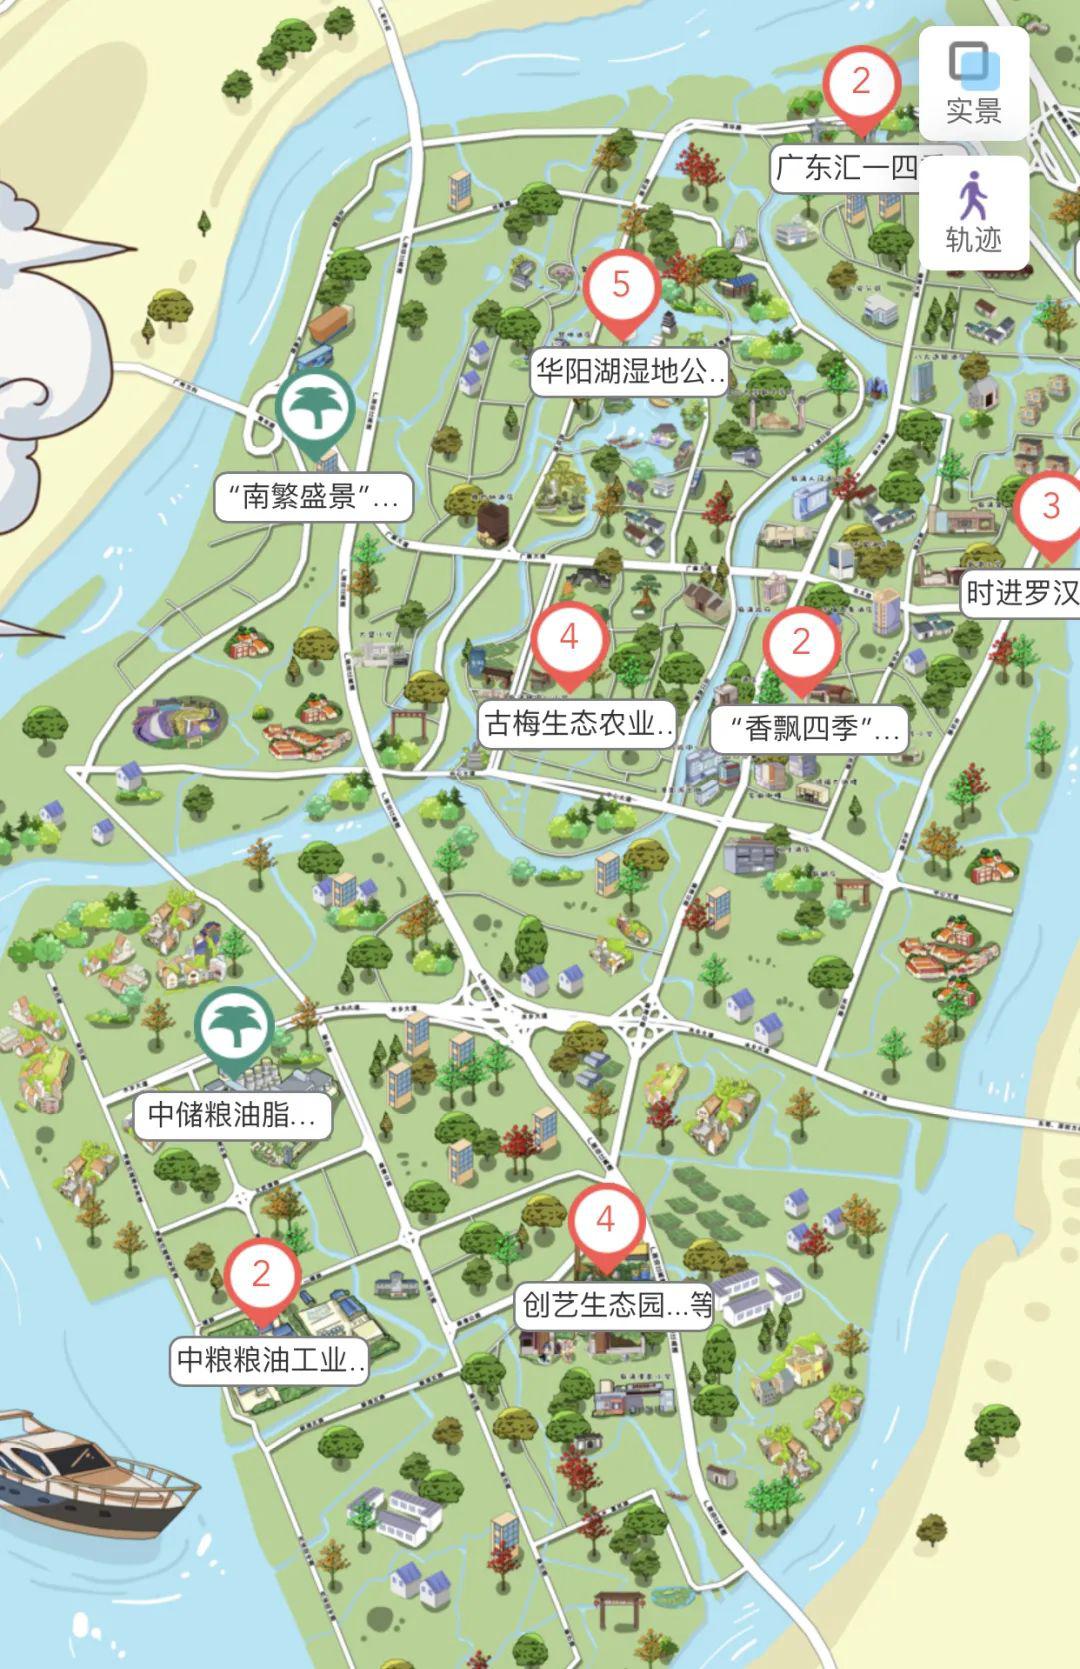 01丨行走的地图线上为市民游客提供丰富的亲子田园旅游产品充分传播